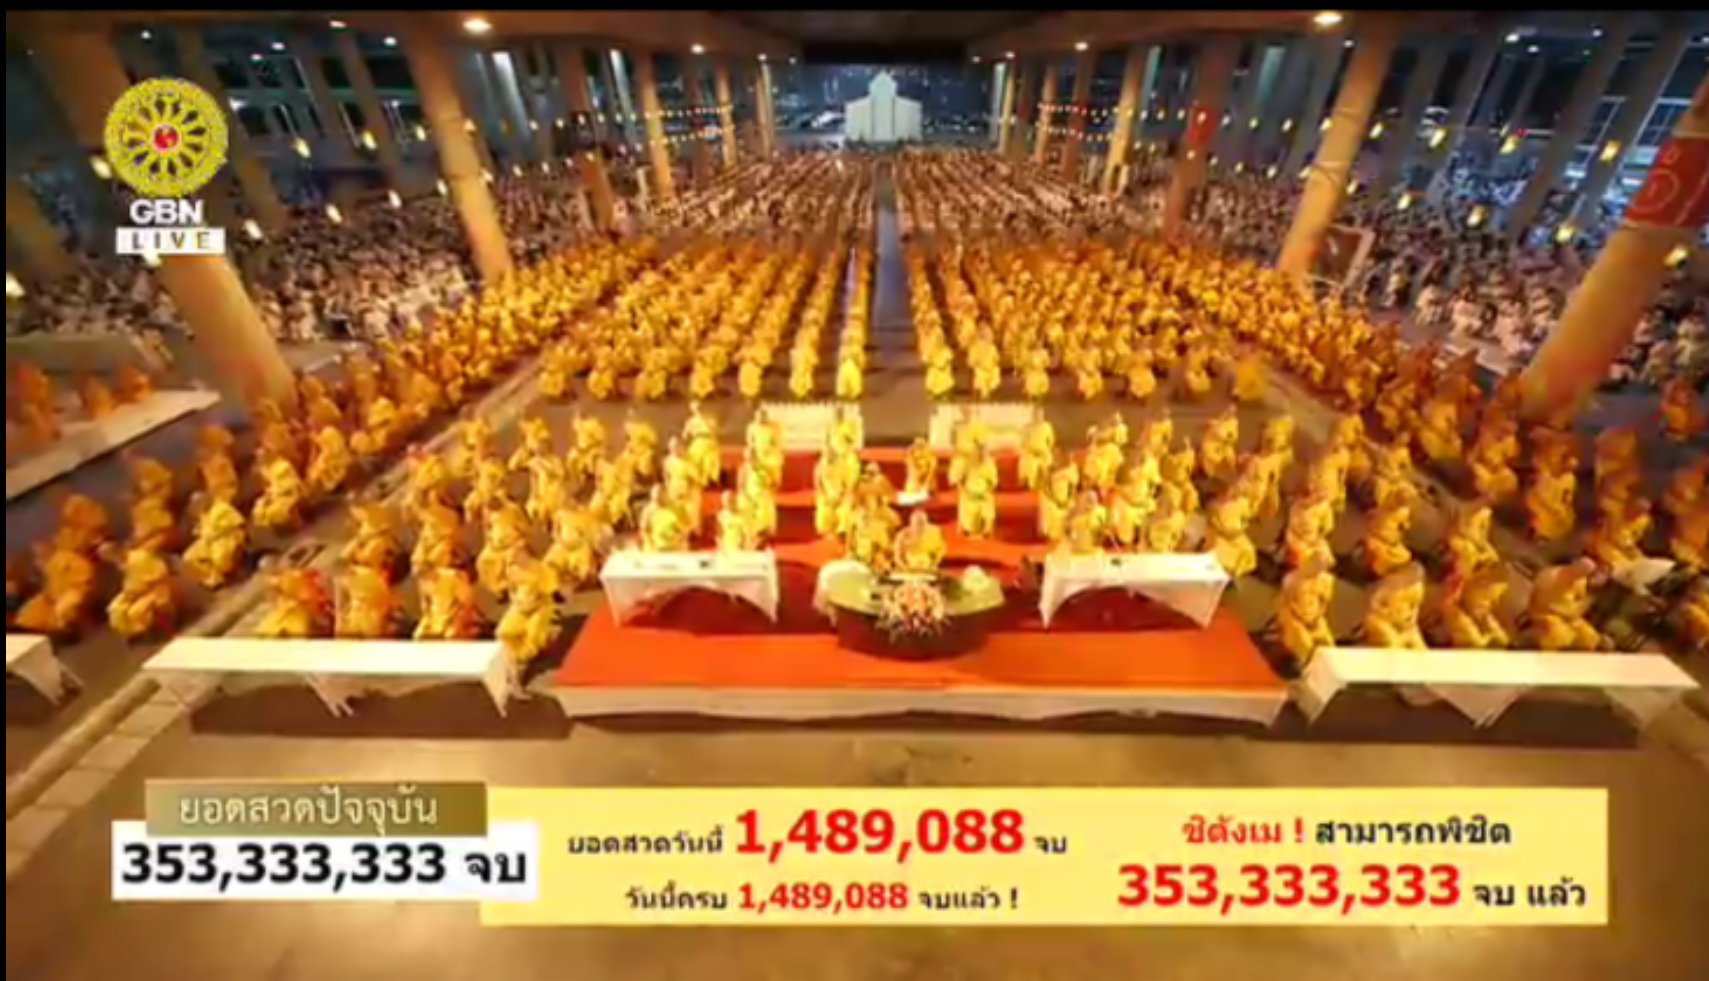 ชิตังเม สวดธรรมจักรครบ 353 ล้านจบ